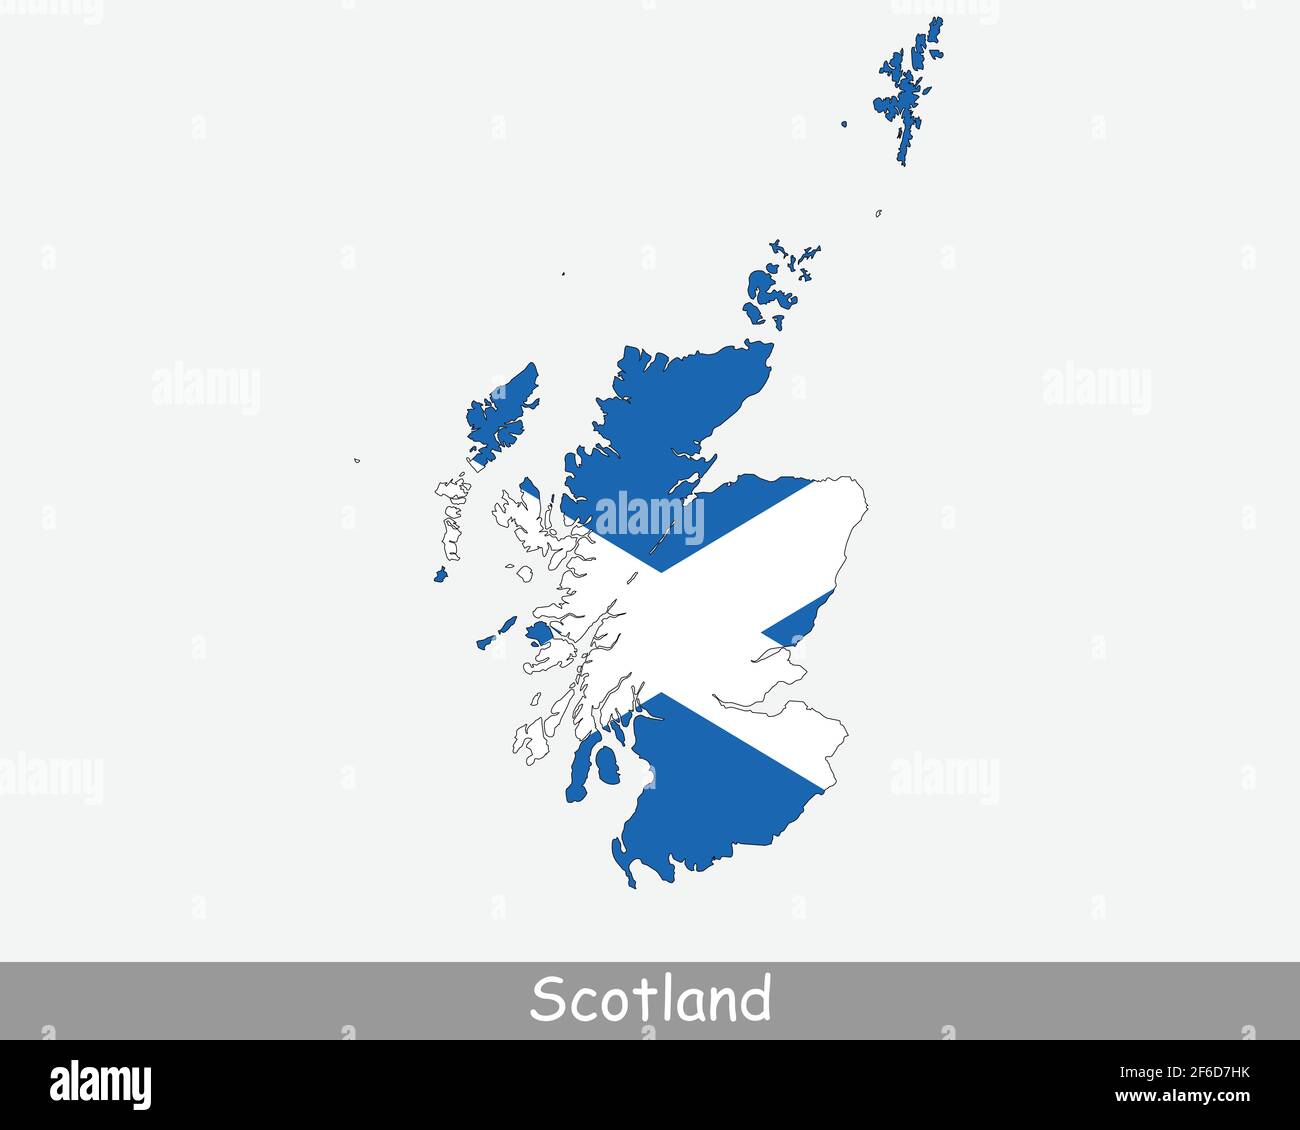 Mappa della bandiera della Scozia. Mappa della Scozia con la bandiera nazionale scozzese isolata su sfondo bianco. Regno Unito, Regno Unito. Illustrazione vettoriale. Illustrazione Vettoriale